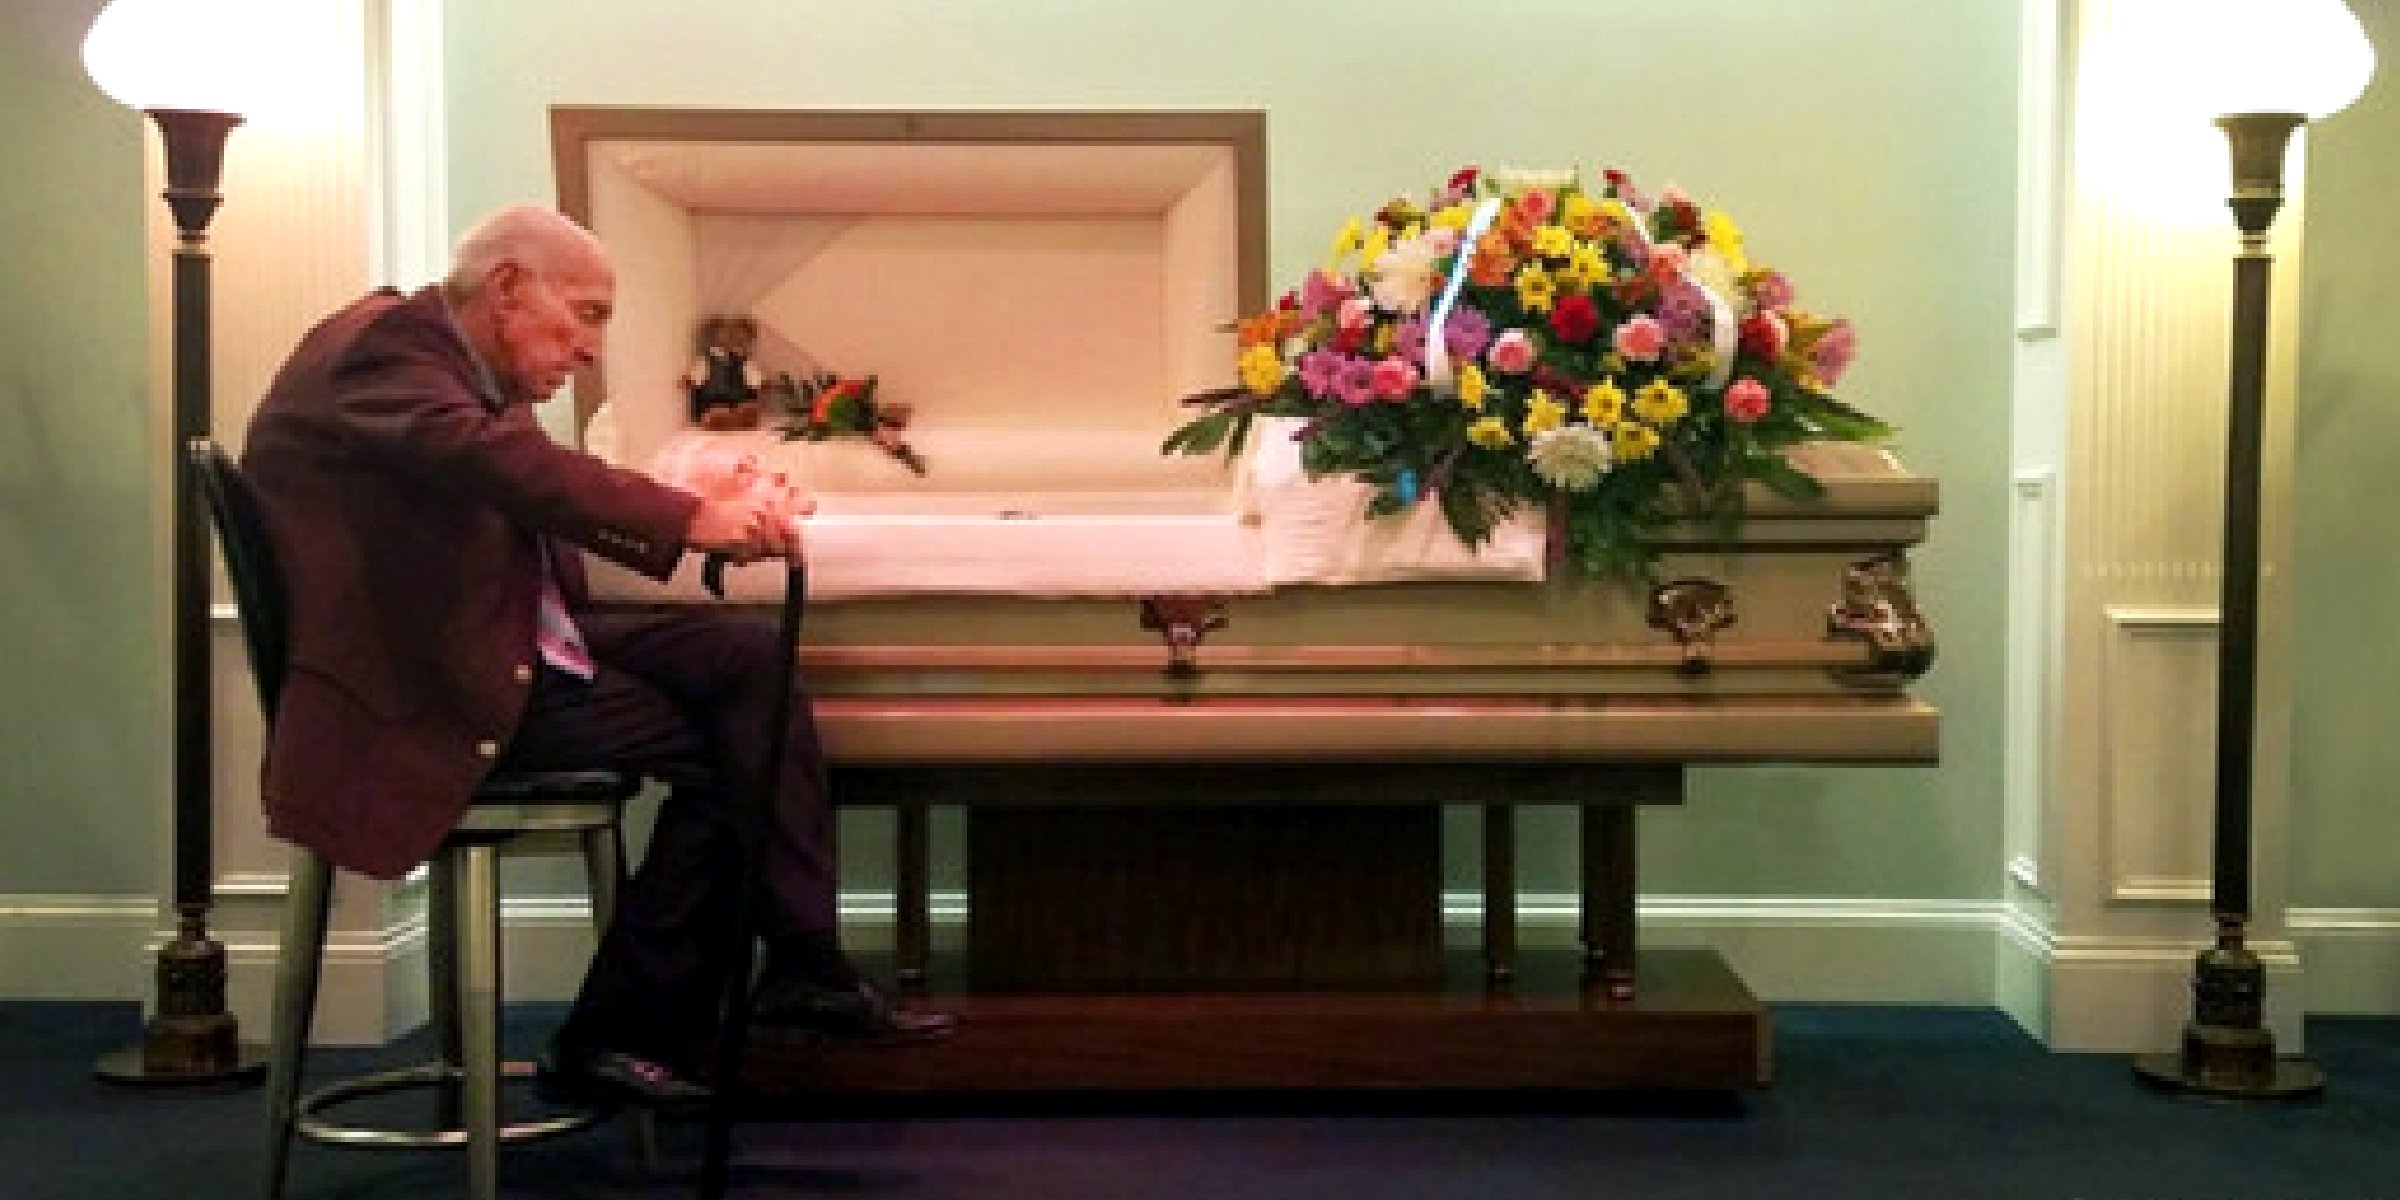 Bobby Moore à côté du cercueil de sa femme décédée | Source : facebook.com/april.shepperd 